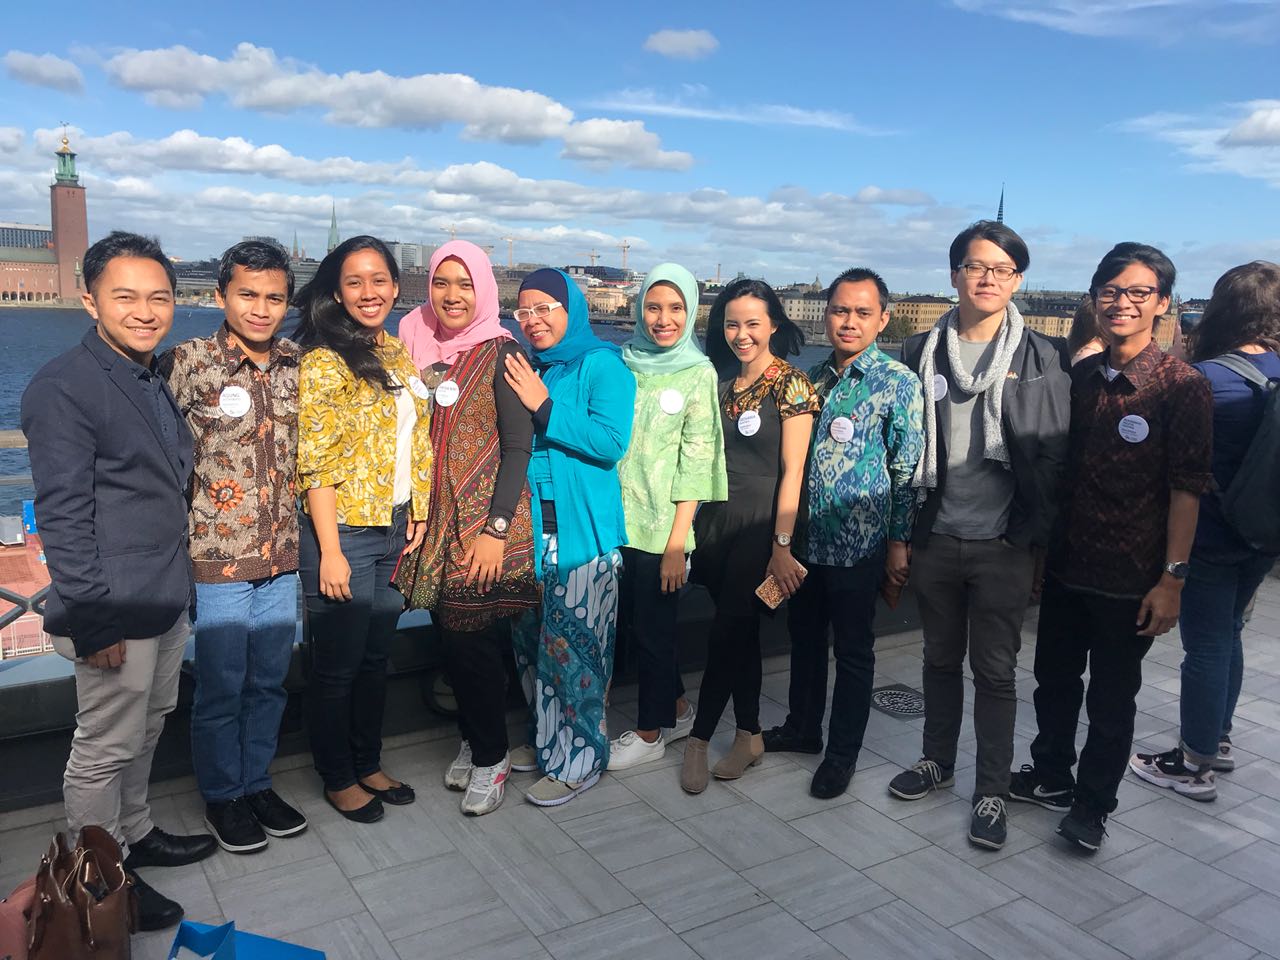 Foto bersama sebagian teman-teman penerima beasiswa SISS2018 Indonesia pada acara Kick-Off di Stockholm